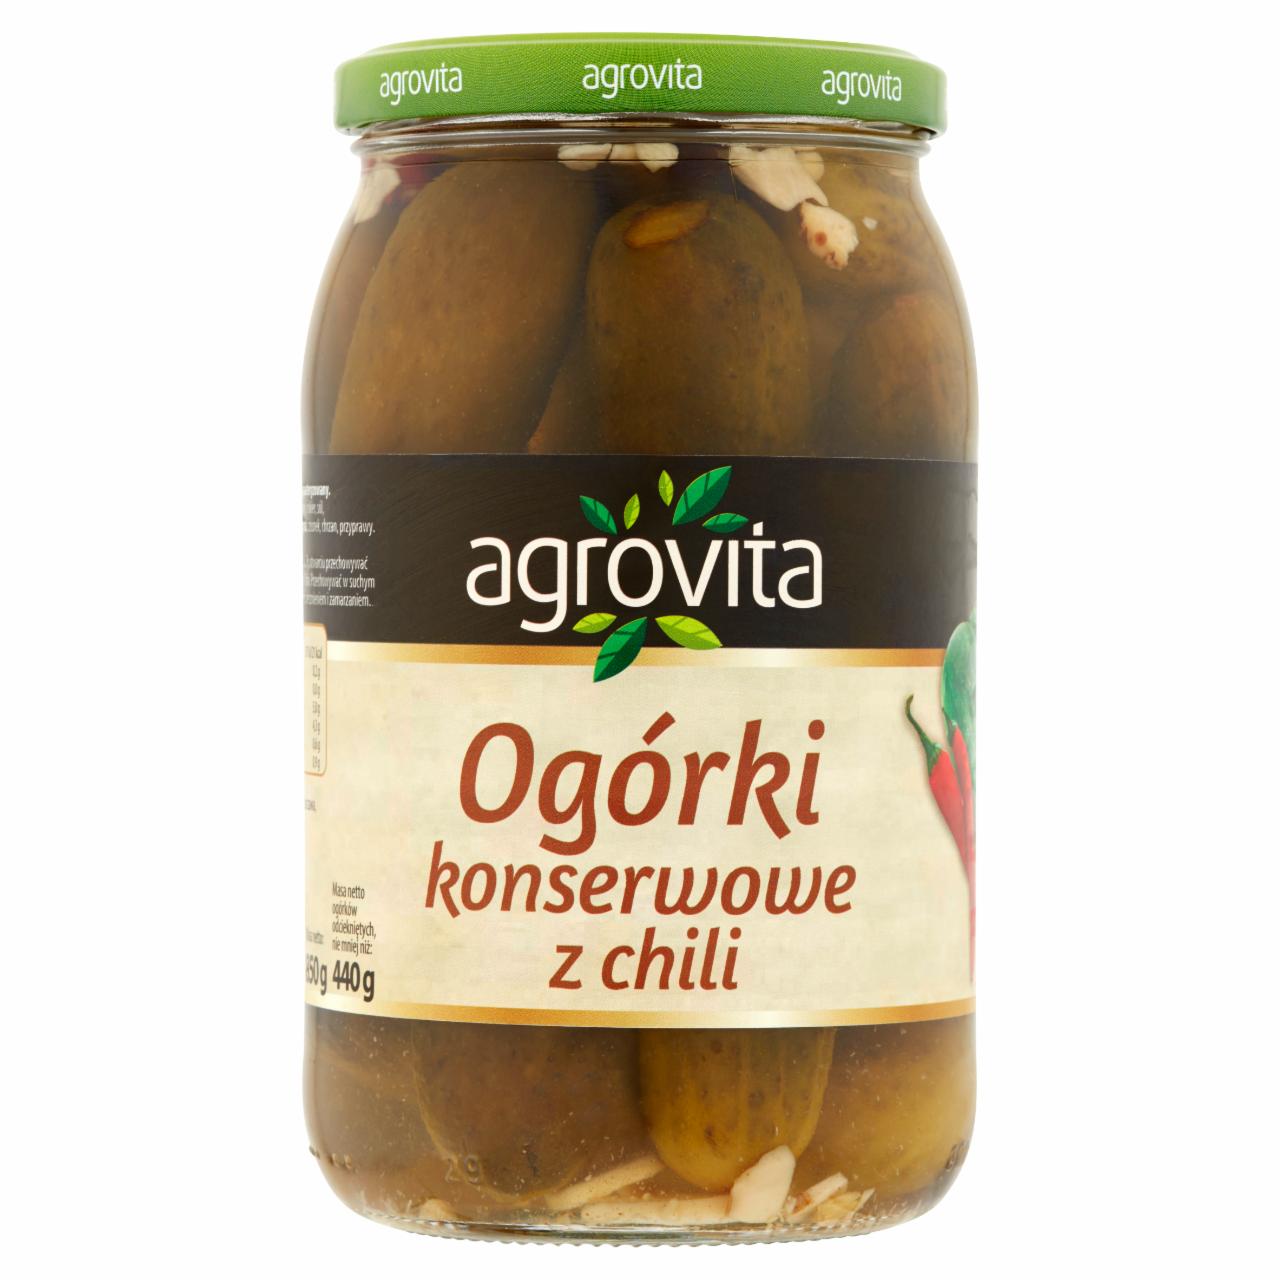 Zdjęcia - Agrovita Ogórki konserwowe z chili 850 g